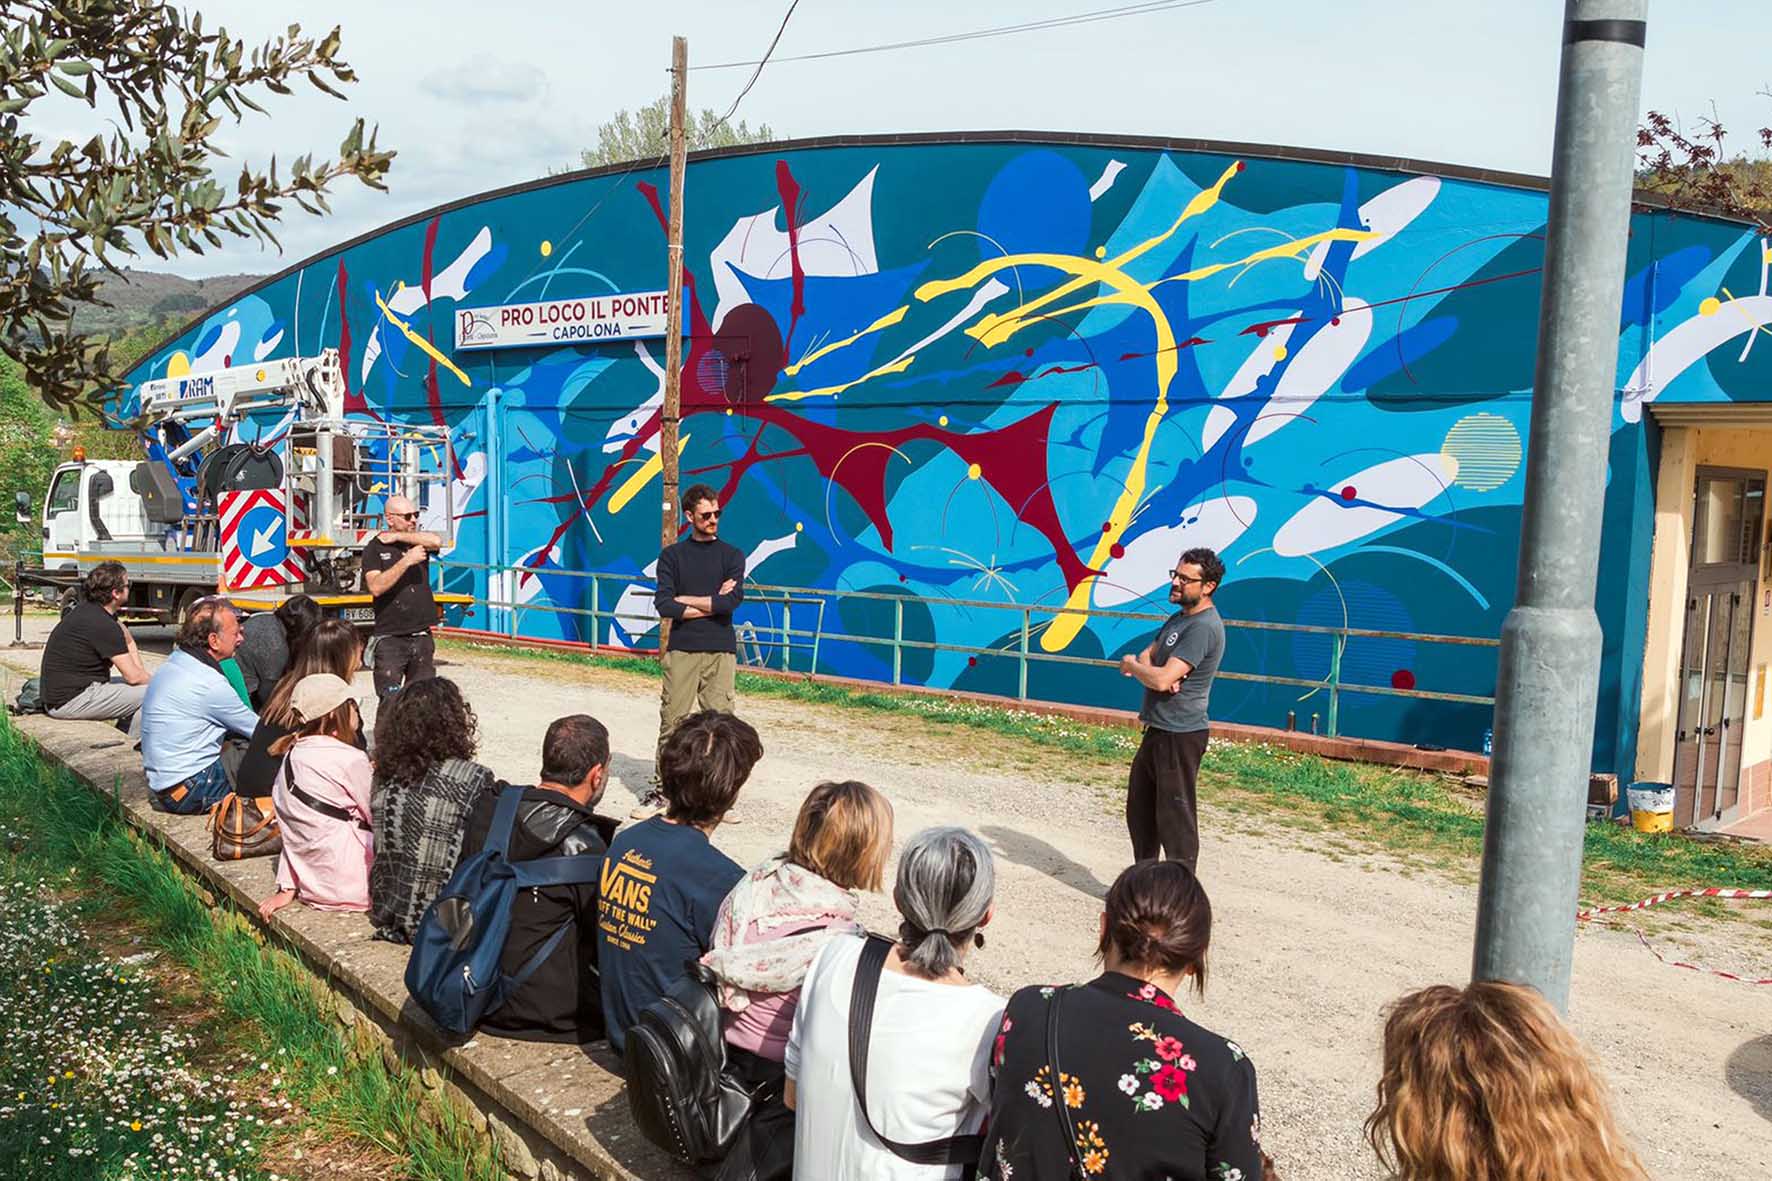 Tre opere di street art hanno arricchito il territorio comunale di Capolona